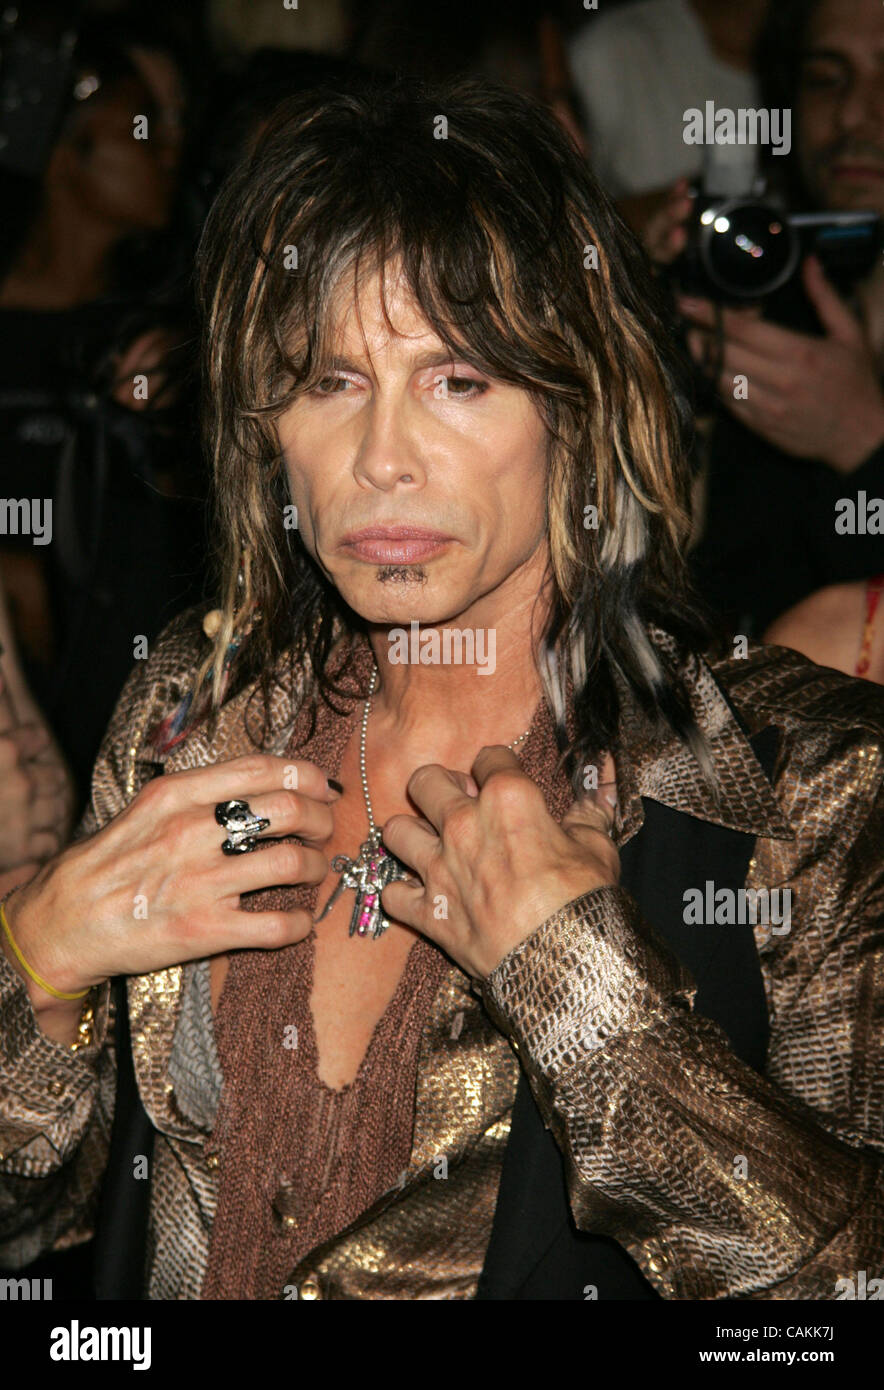 Sep 07, 2007 - New York, NY, USA - STEVEN TYLER, singer of Aerosmith at the  arrivals of